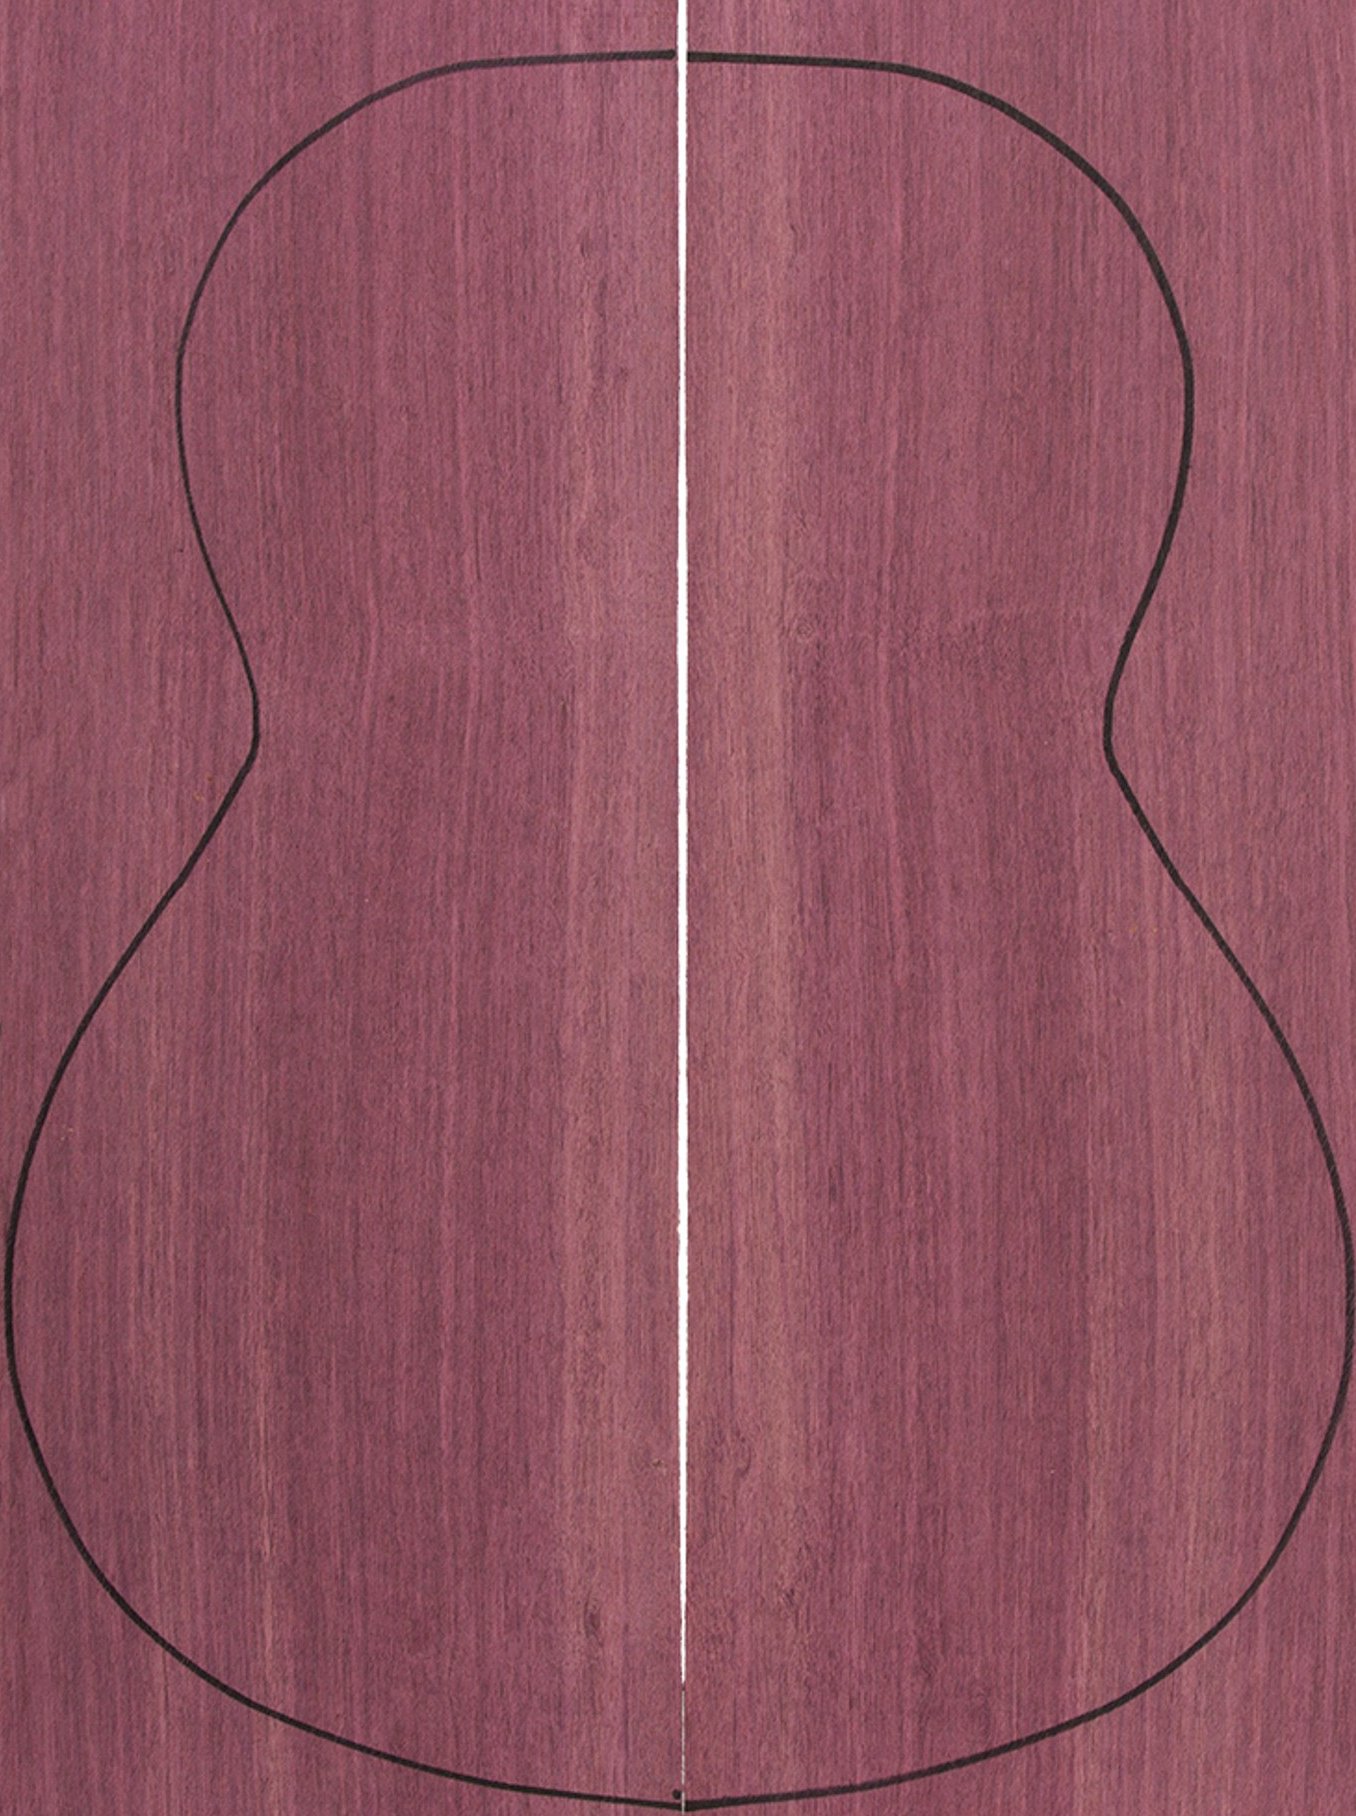 Fondos Purple Heart (550x200x4 mm)x2